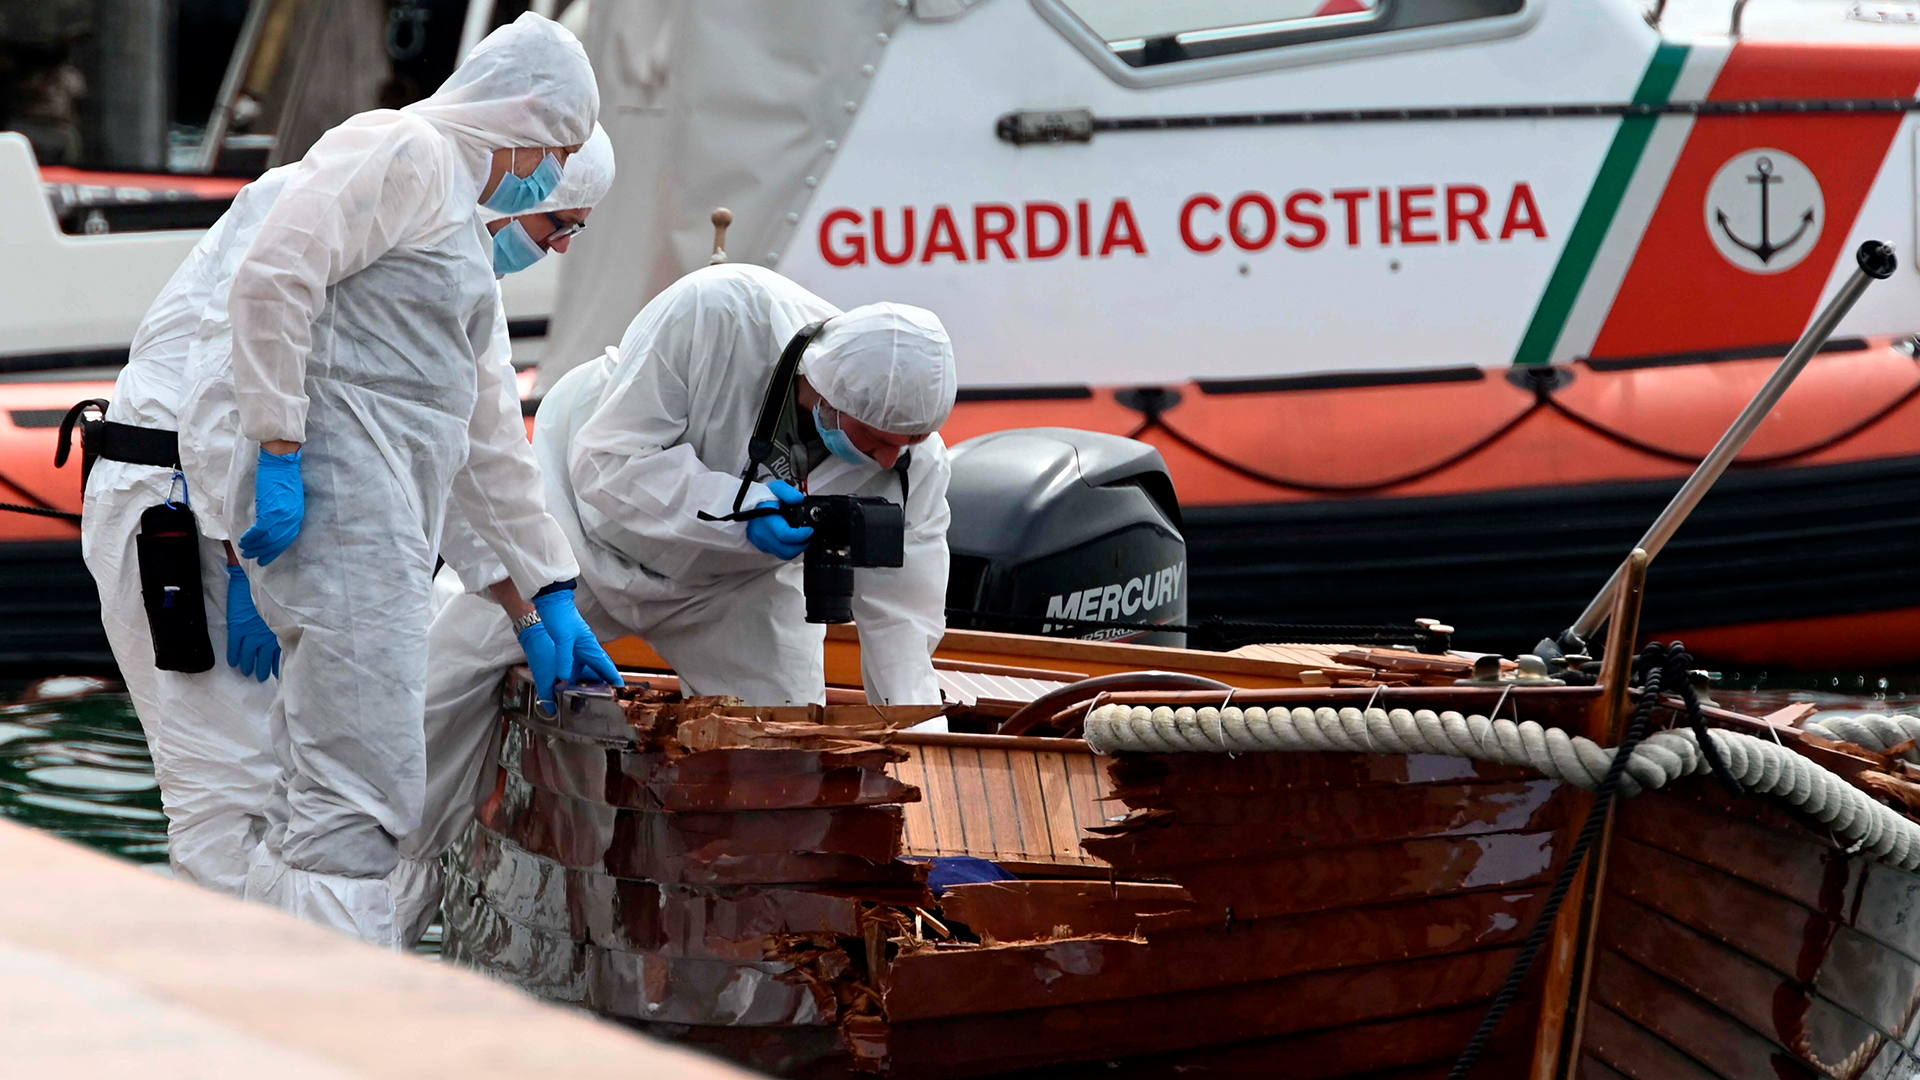 Forensiker begutachten den Schaden an einem Boot im Hafen in Salo, Italien. (Archivbild vom 20.06.2021) | dpa